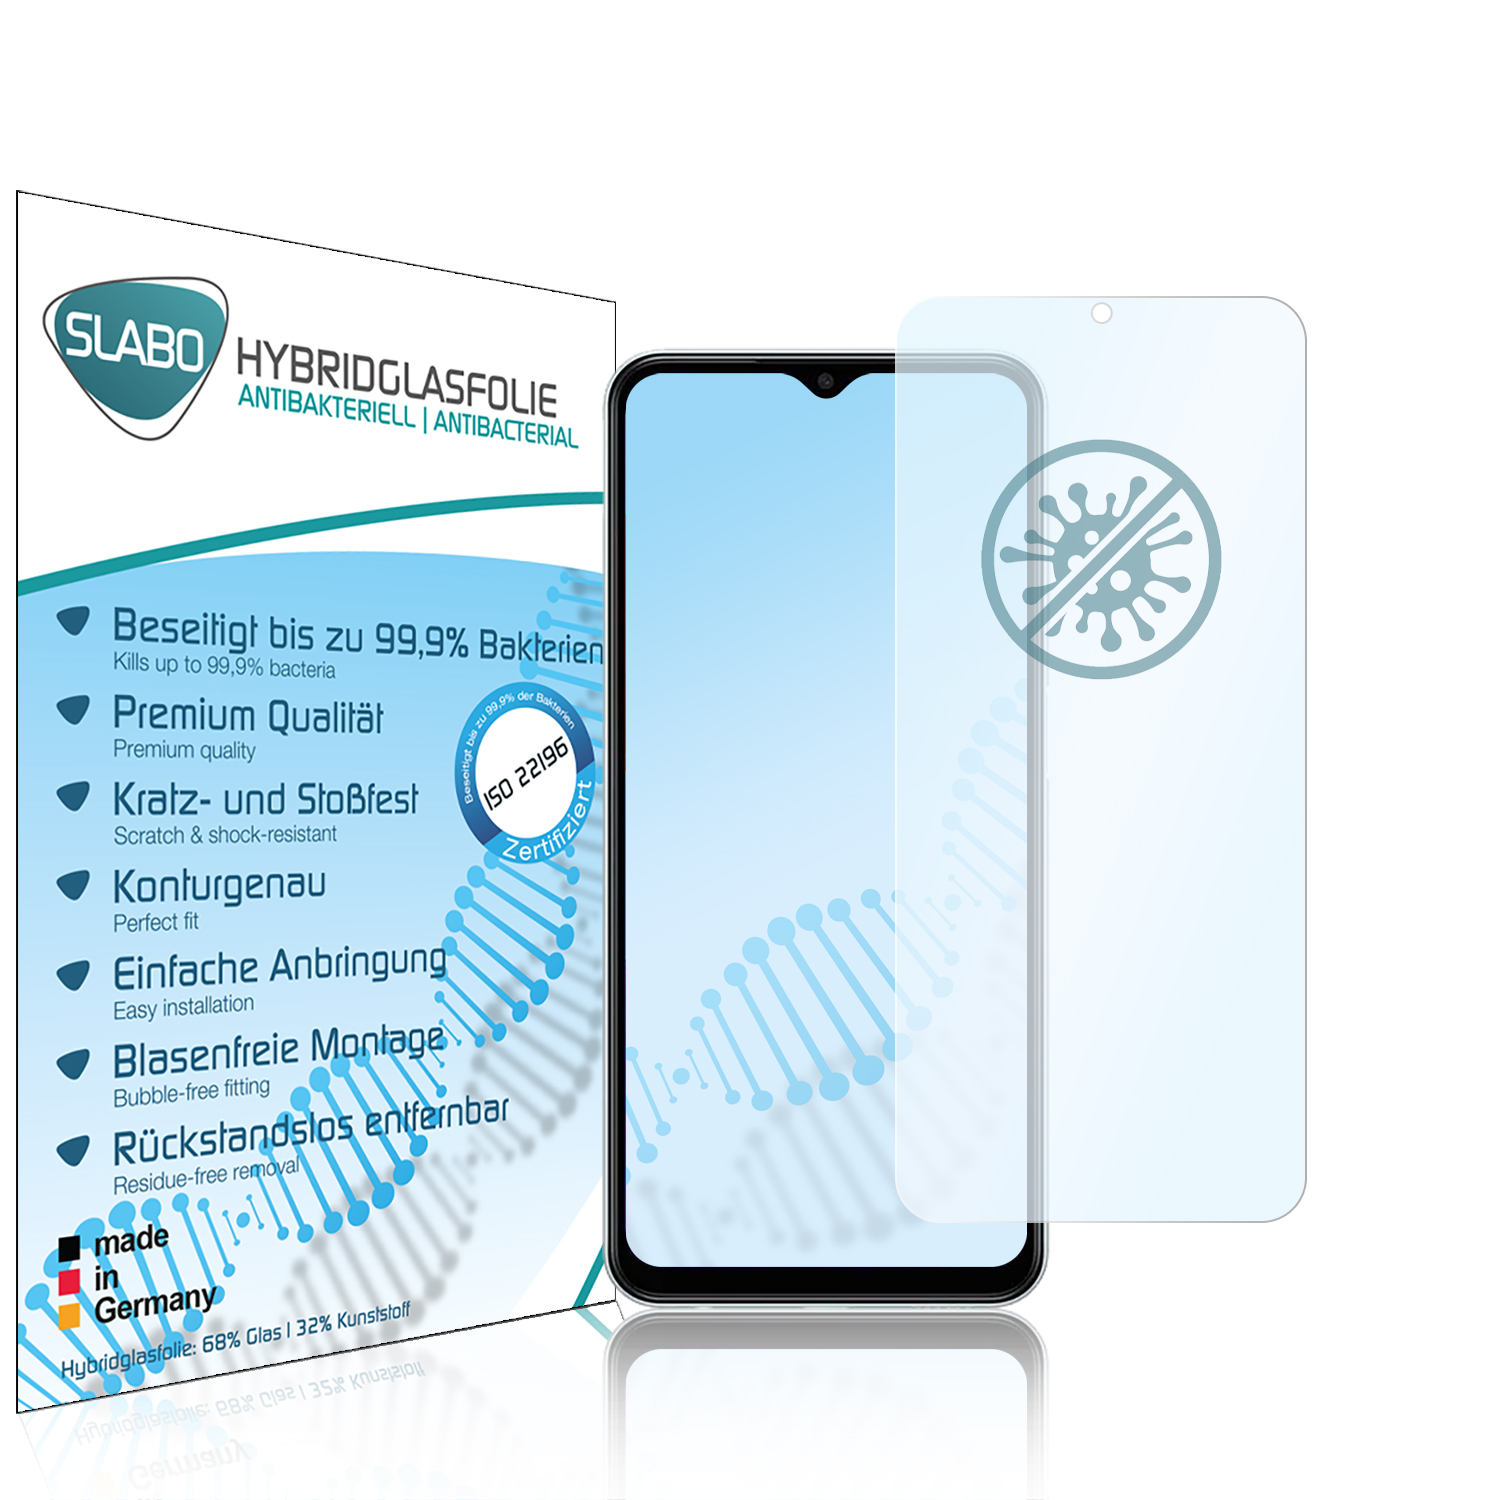 SLABO antibakteriell flexibles Hybridglas Galaxy Displayschutz(für Samsung M13 Samsung 4G)